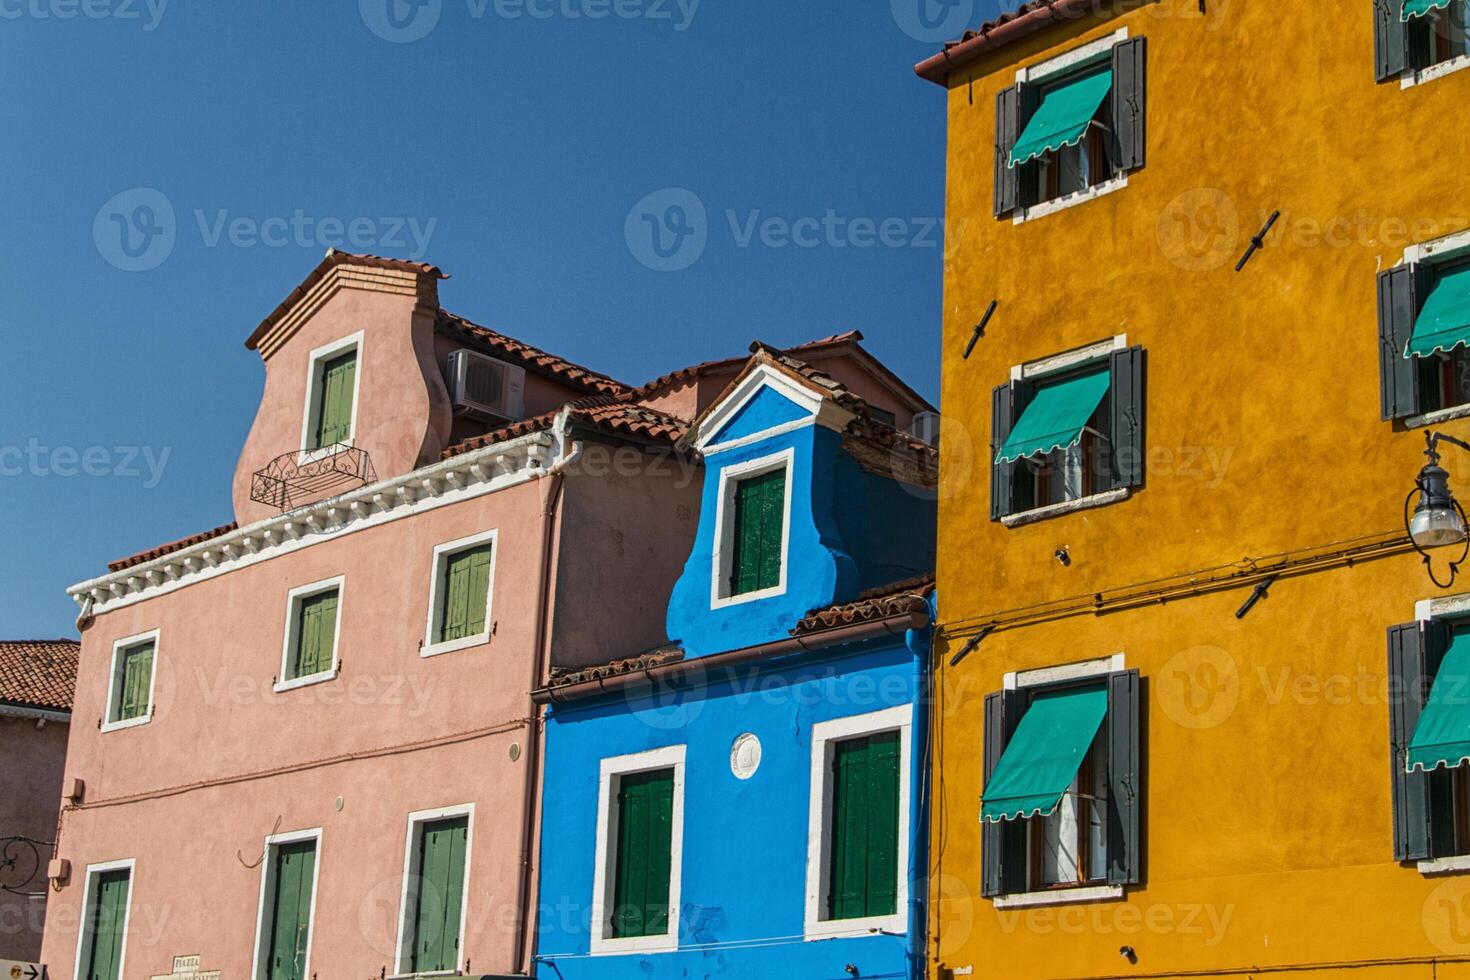 la fila de casas coloridas en la calle burano, italia. foto